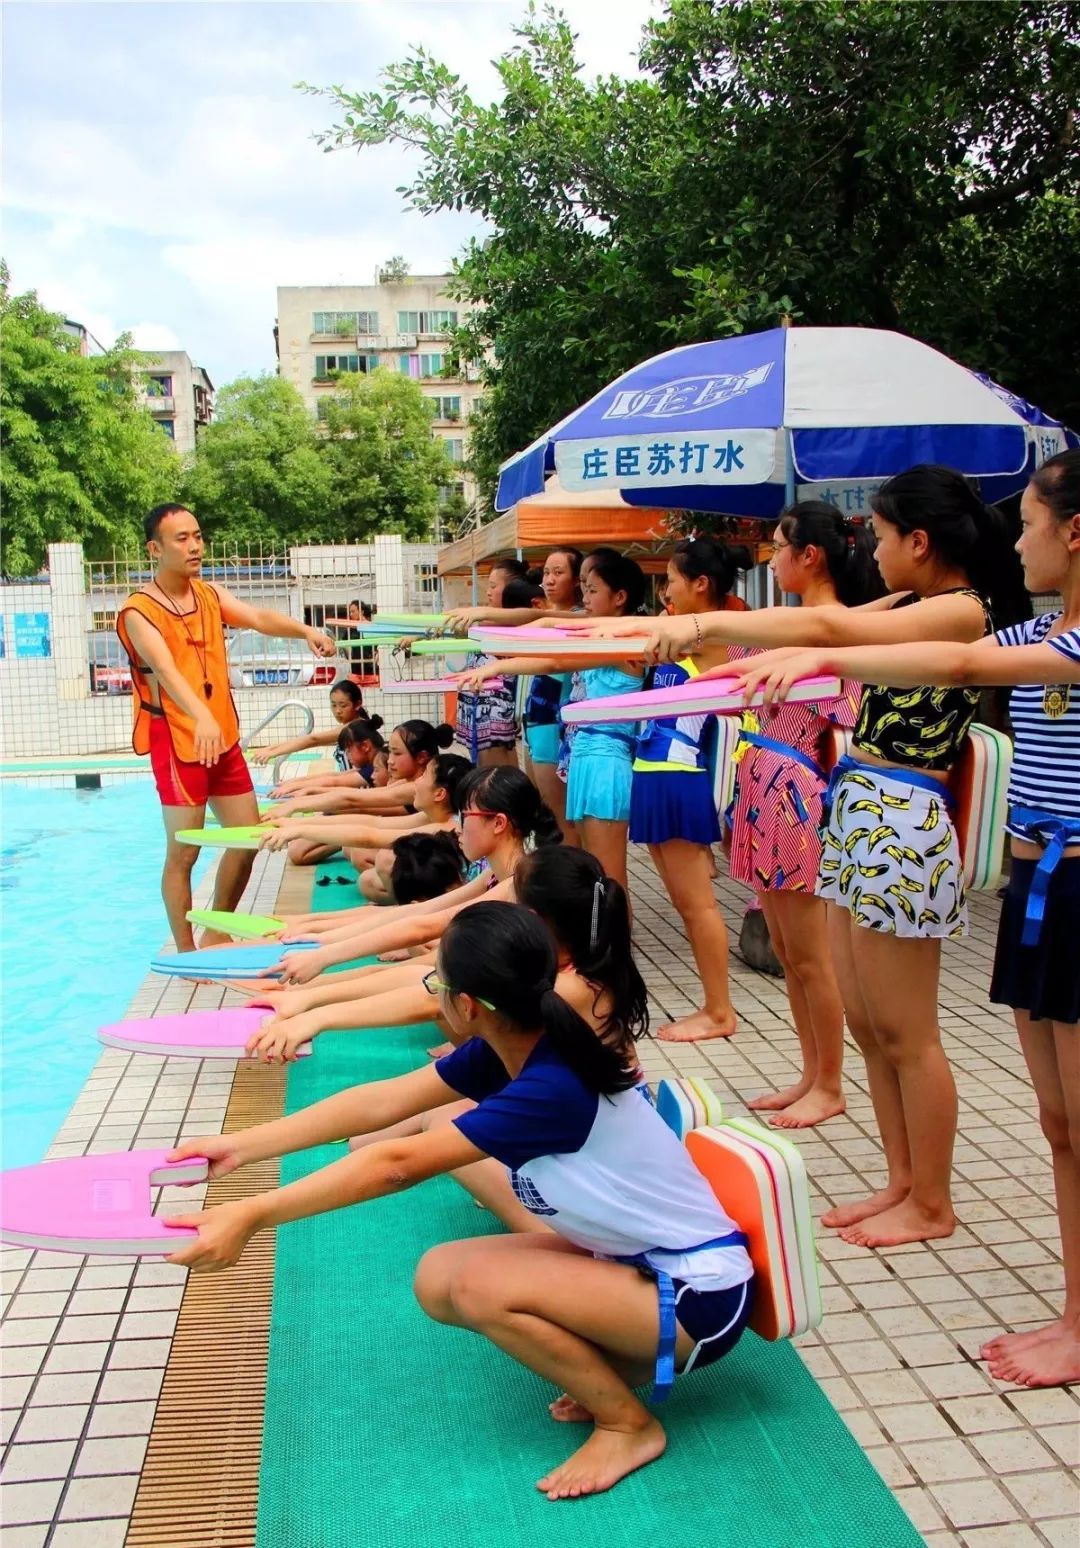 2018-06-27 18:42 来源: 遂宁新教育 "目前游泳课针对初一学生开展